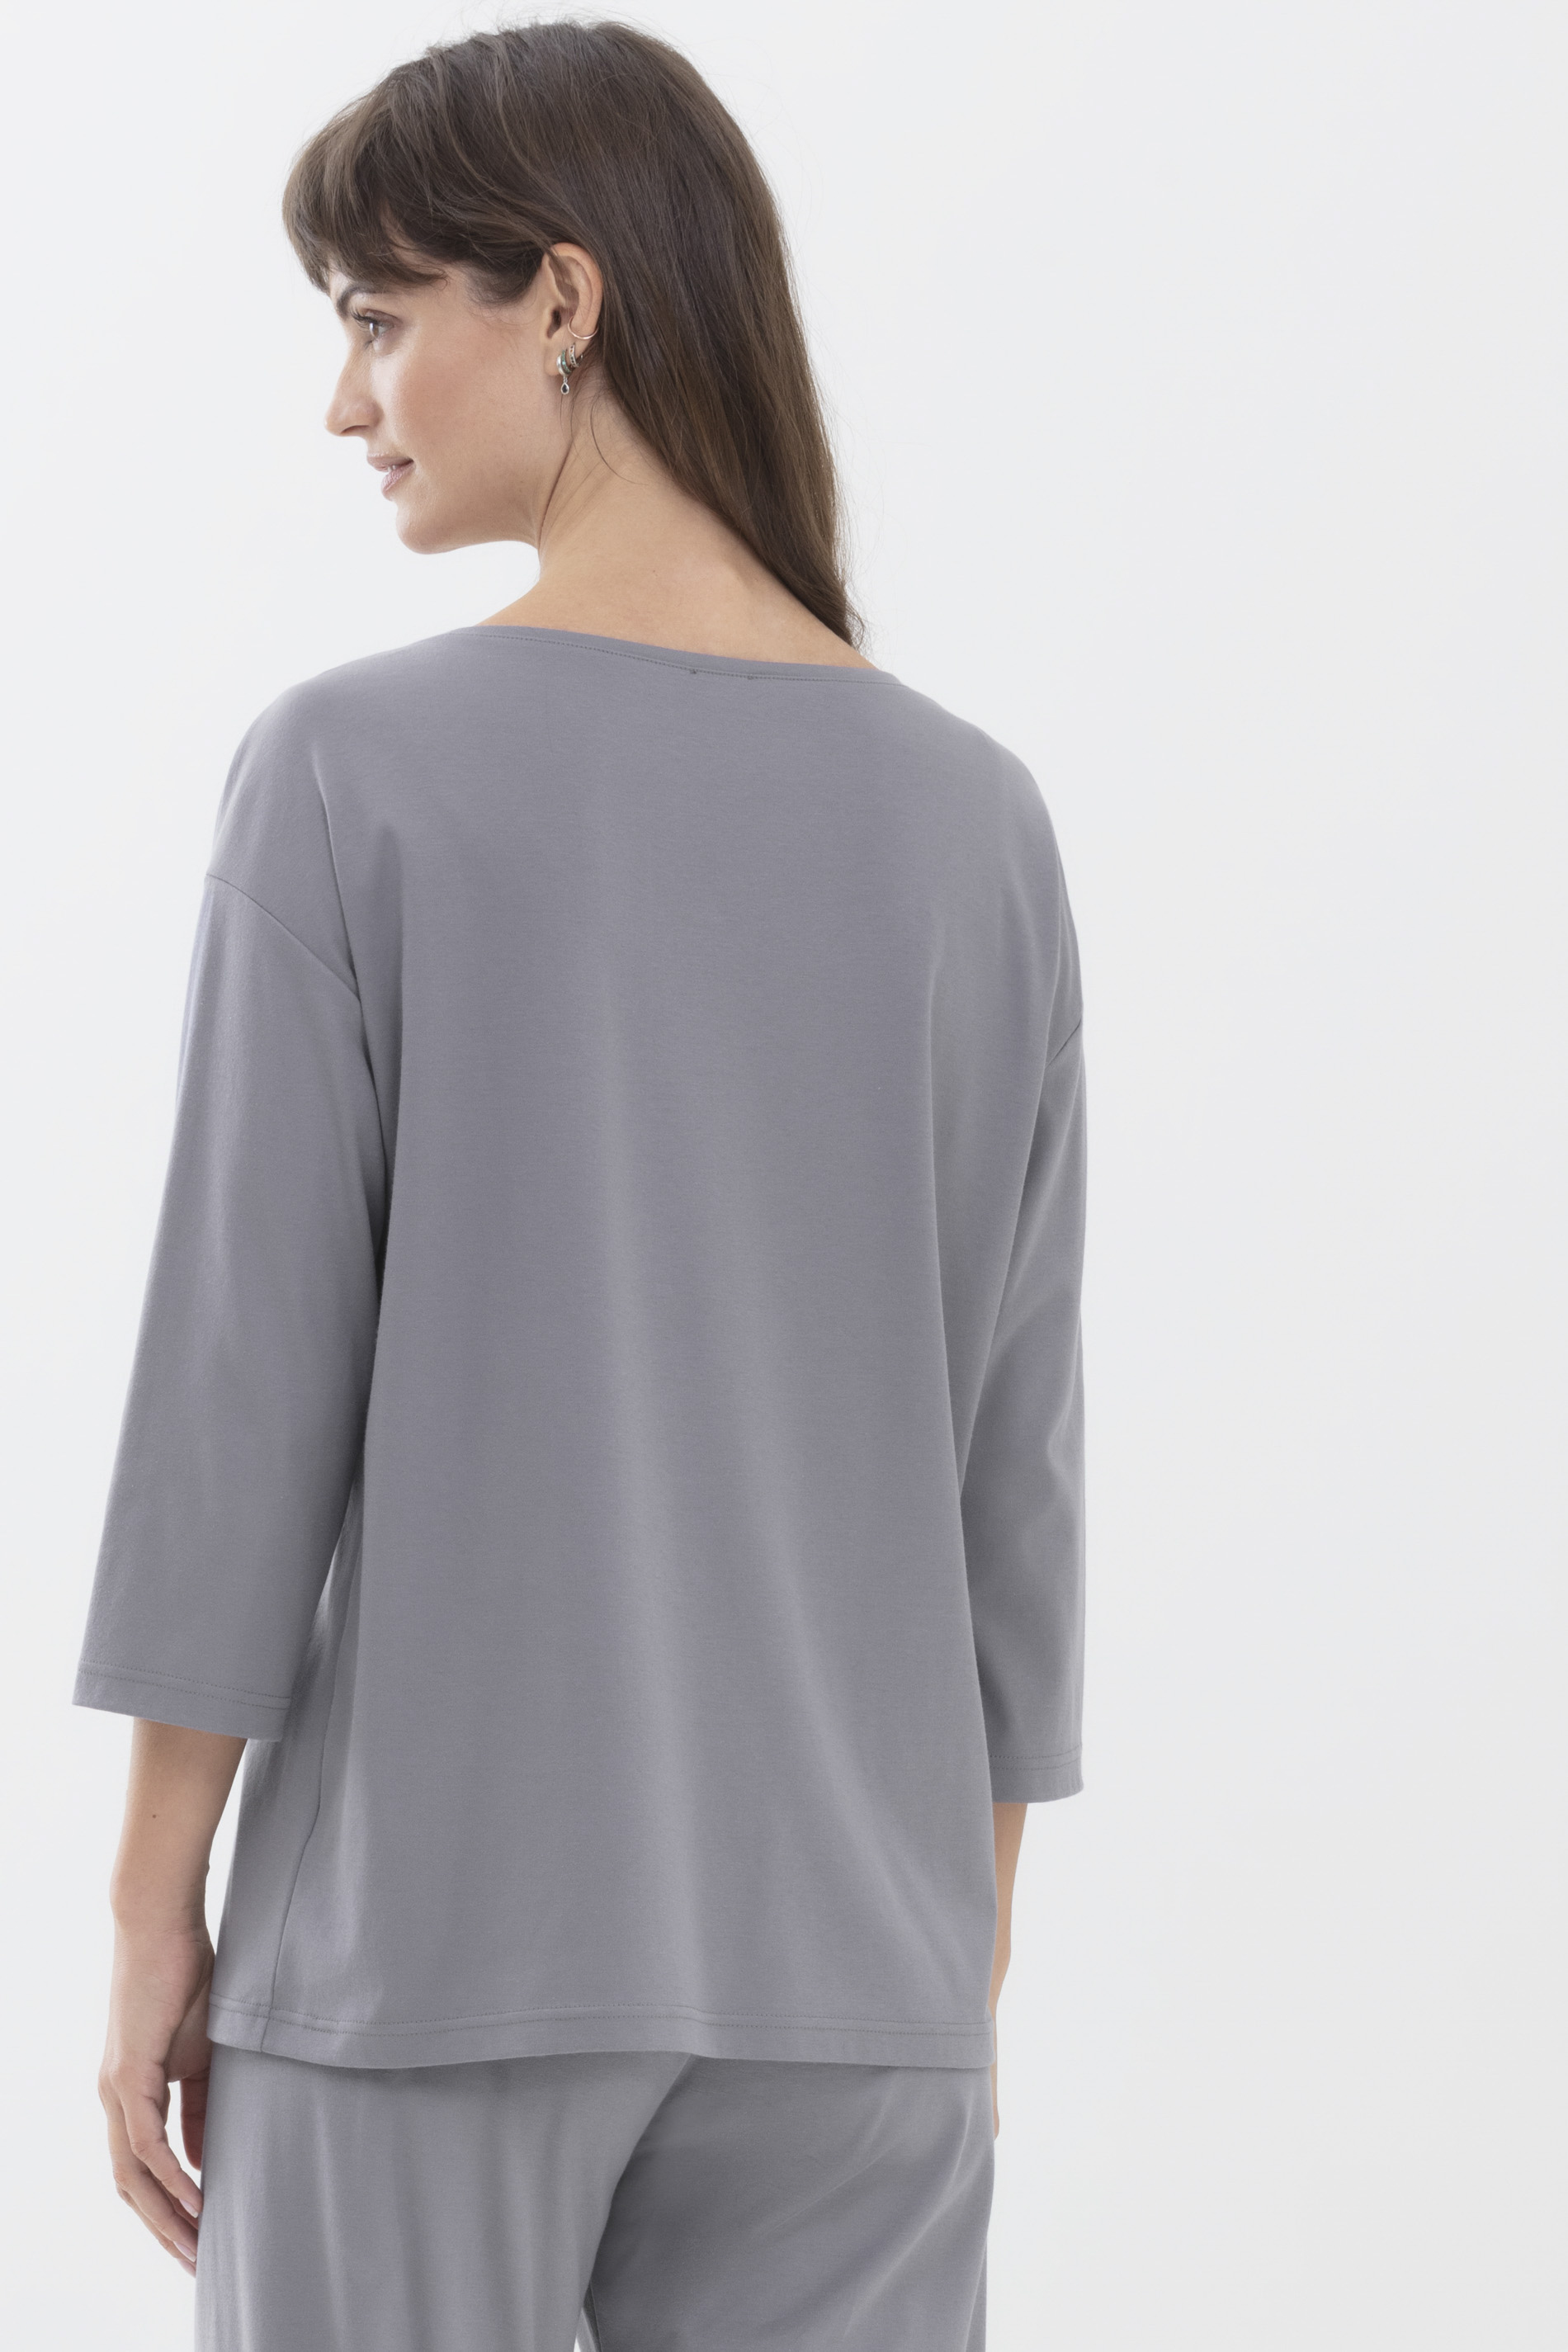 Shirt Lovely Grey Serie Sleepsation Achteraanzicht | mey®